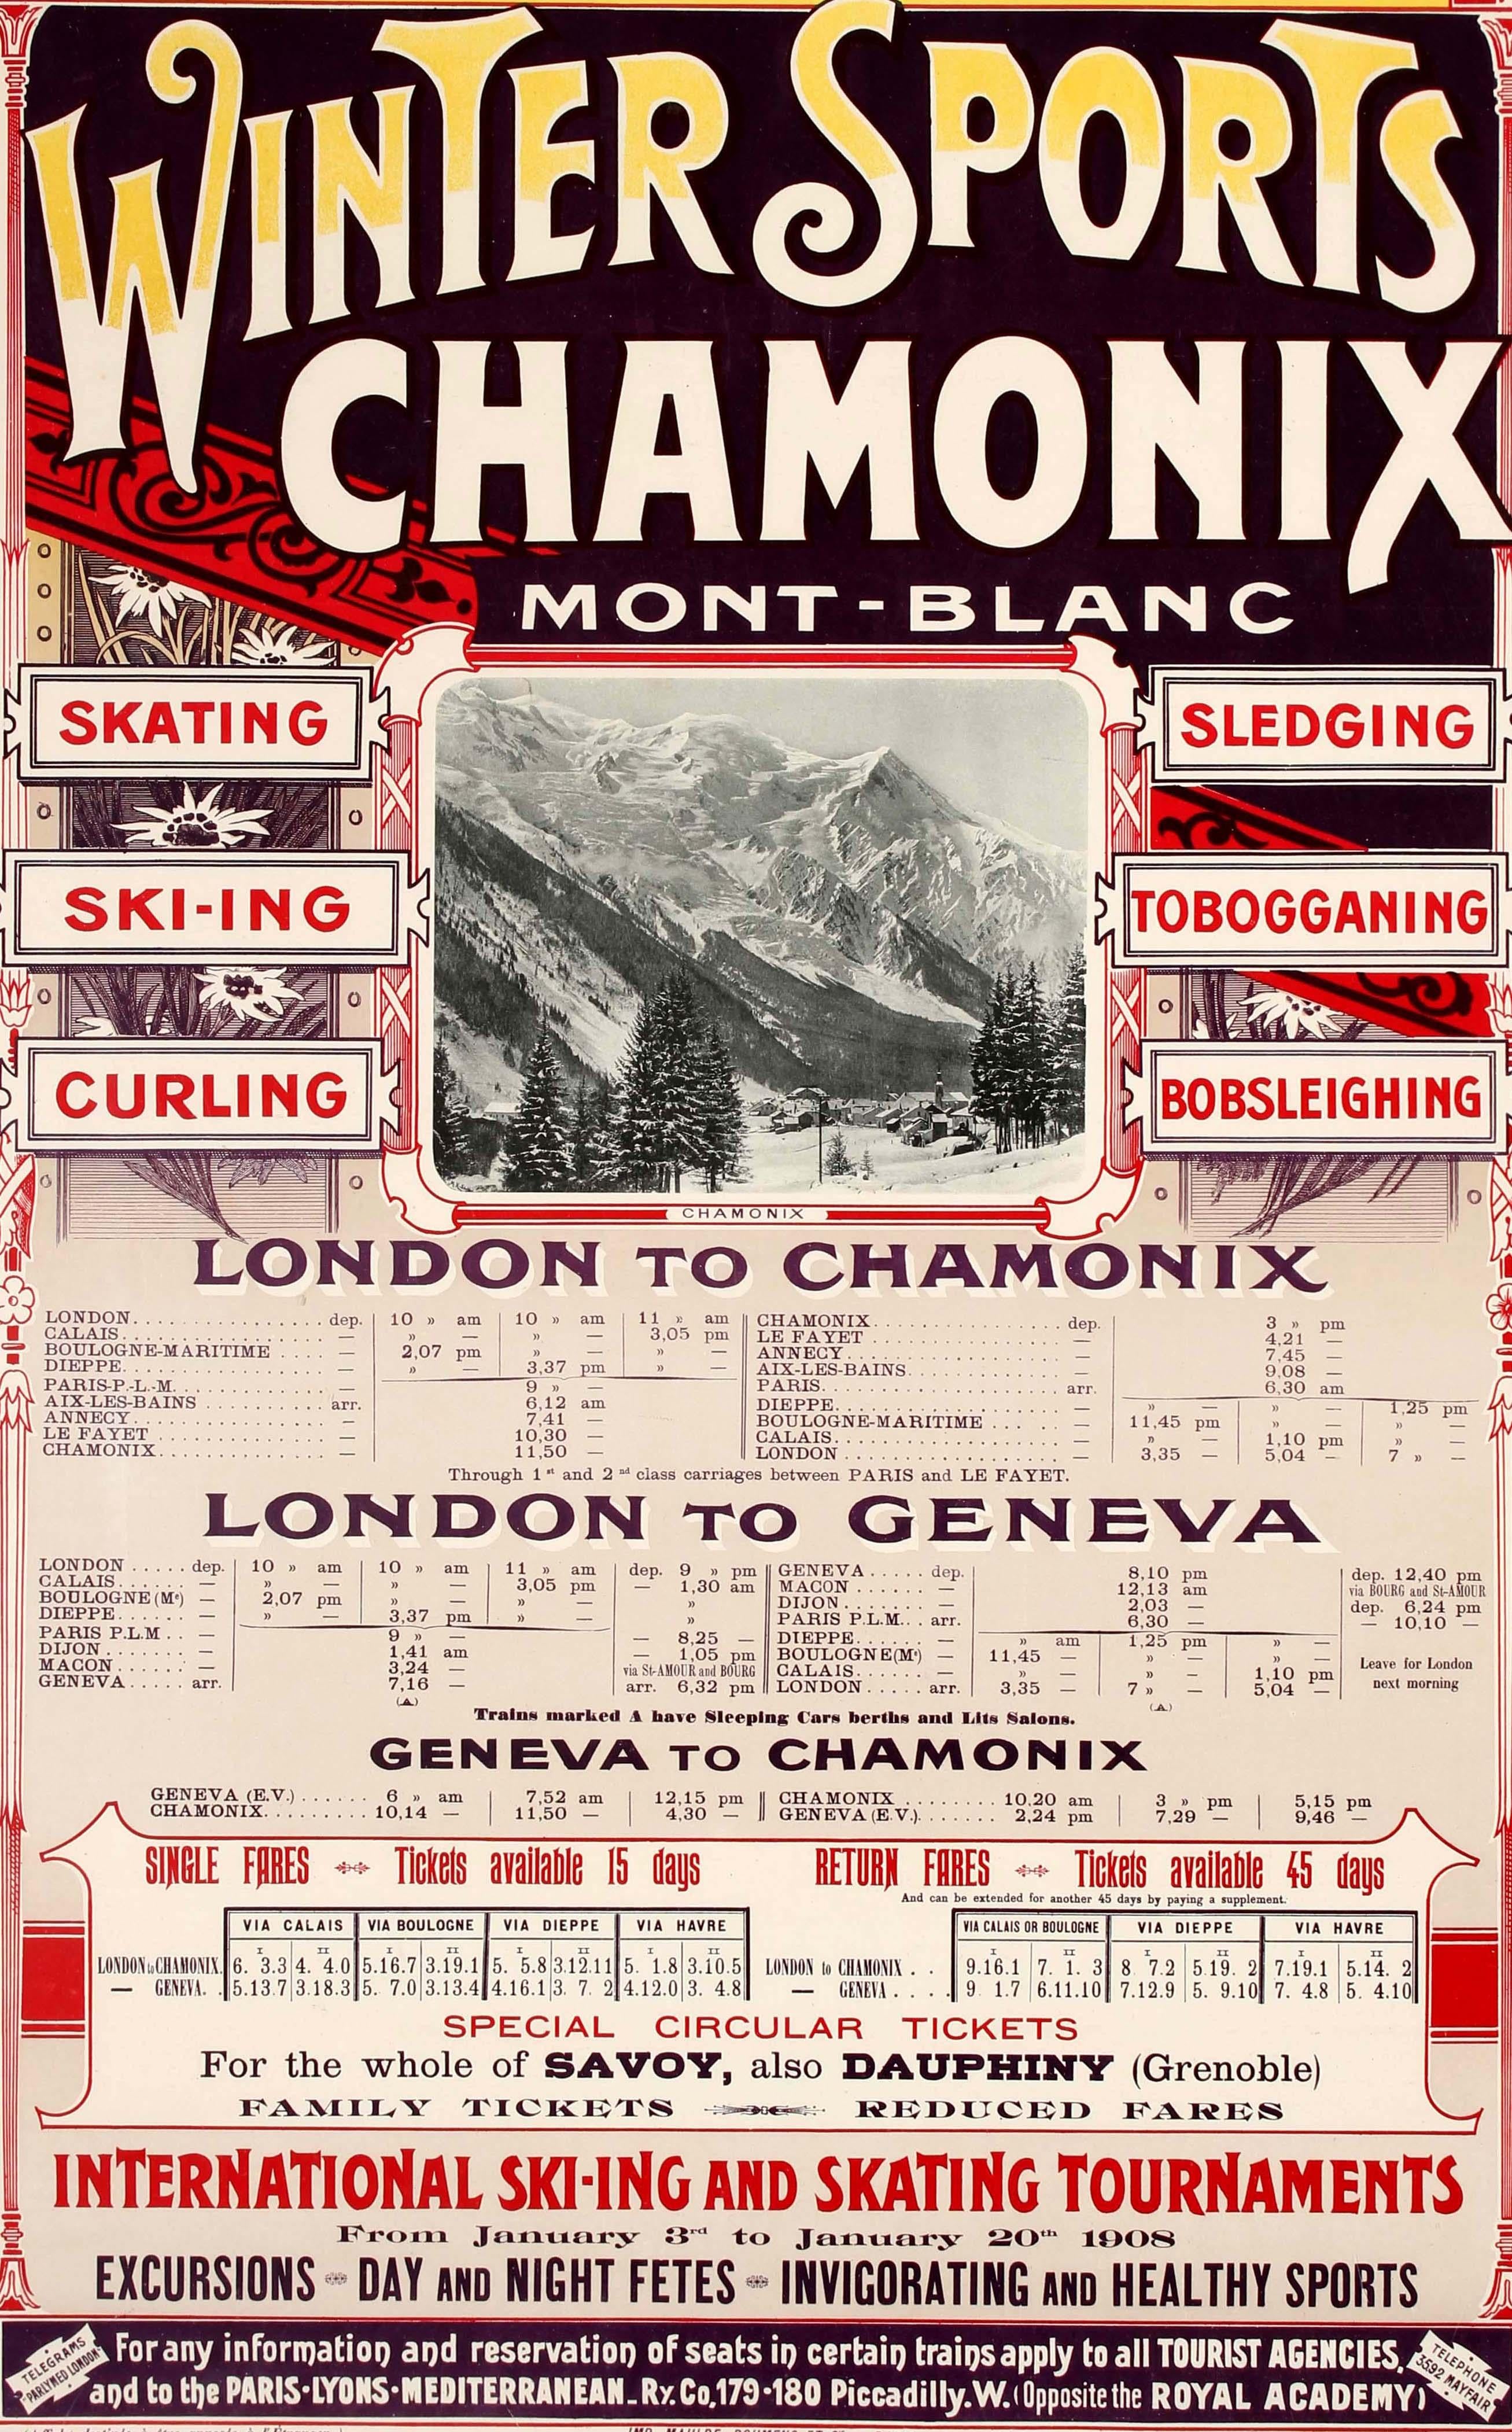 Affiche publicitaire originale publiée par le Chemin de fer PLM Paris Lyon et Méditerranée et diffusée à l'étranger pour promouvoir ses services ferroviaires vers les stations alpines de Chamonix dans la région du Mont-Blanc depuis Londres et Genève